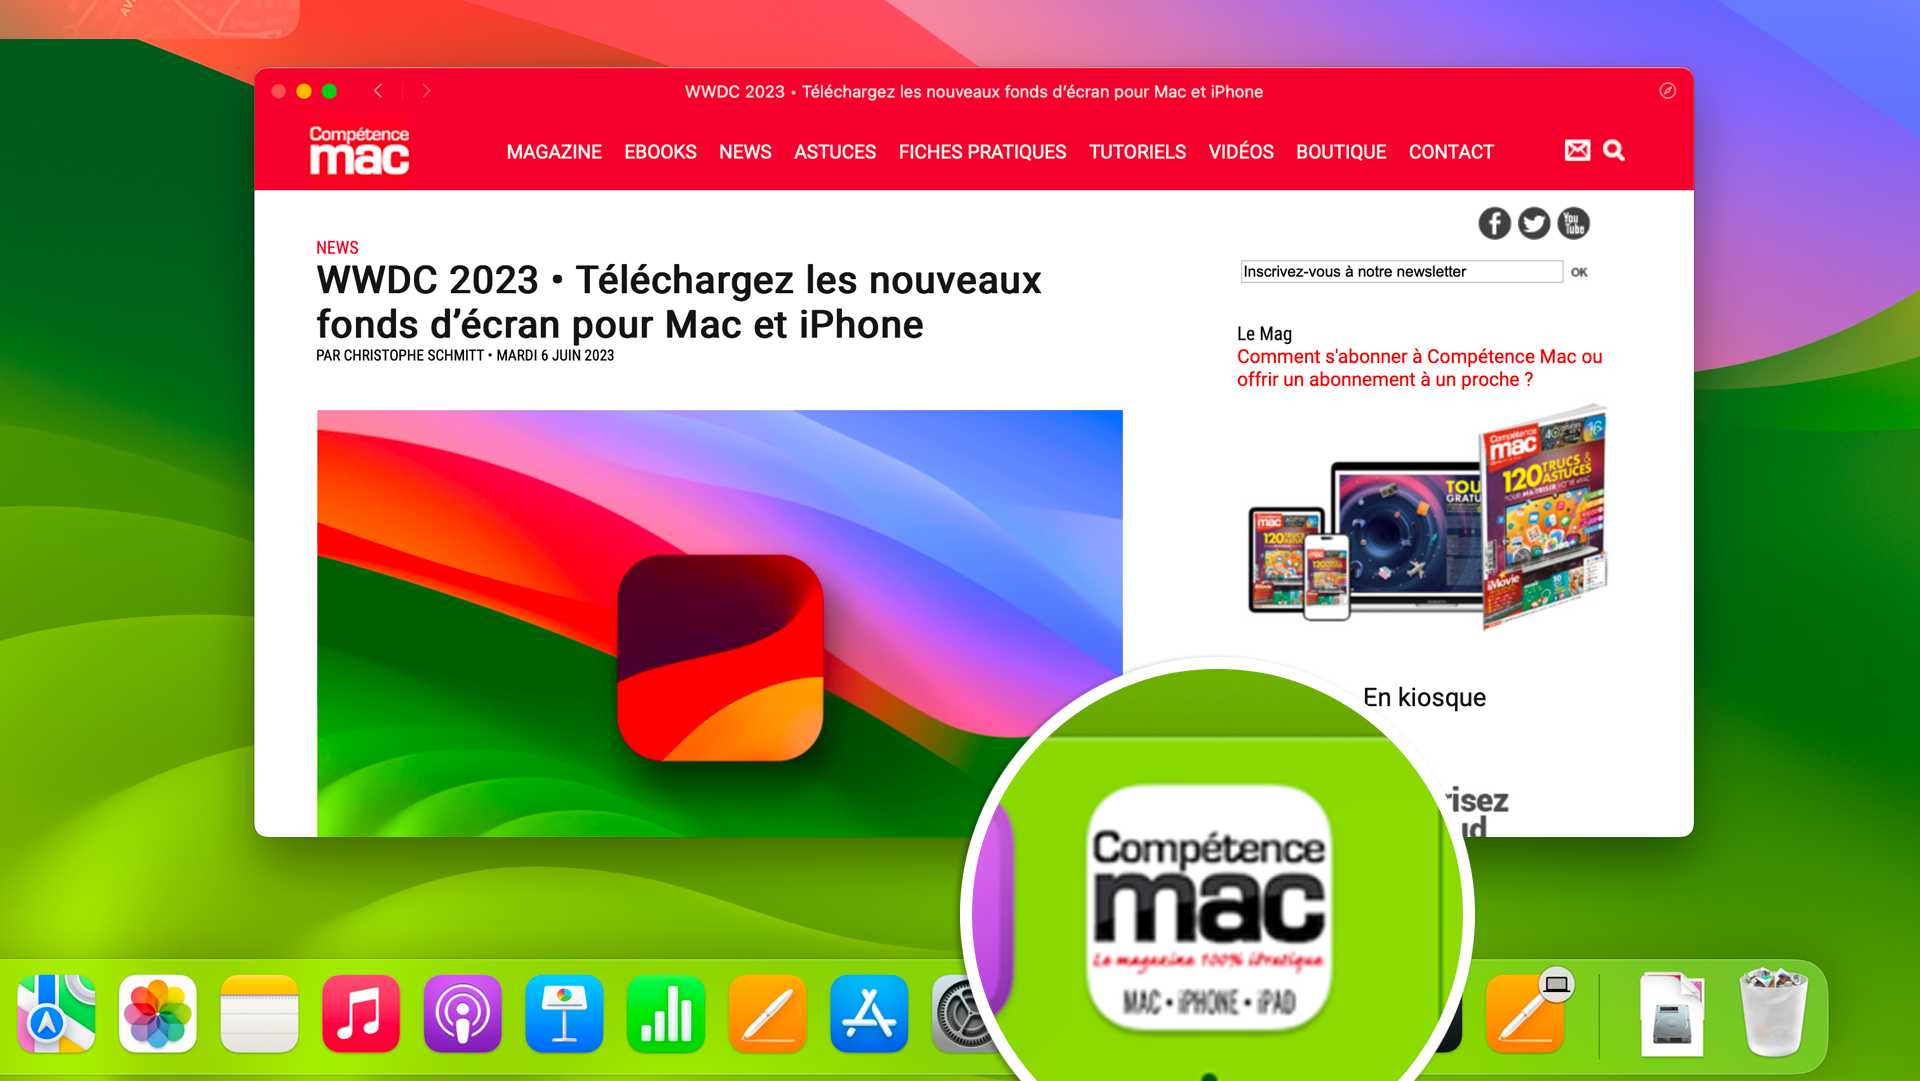 WWDC 2023 • Quelles nouveautés et améliorations pour macOS 14 Sonoma ?